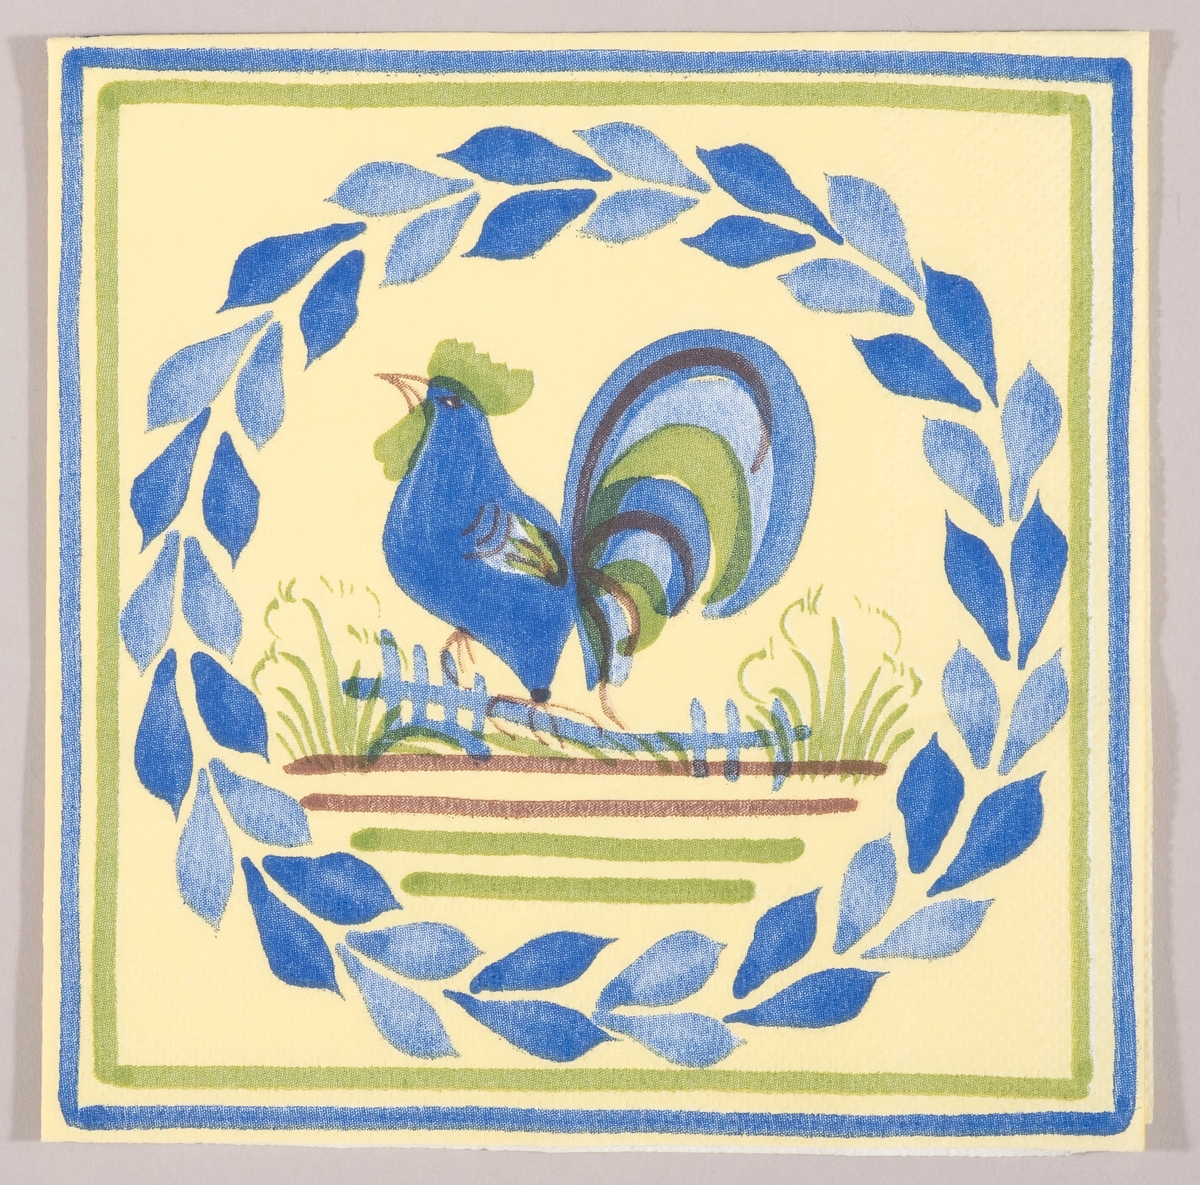 *en blå hane sitter på et gjerde. En rund krans av blå blader